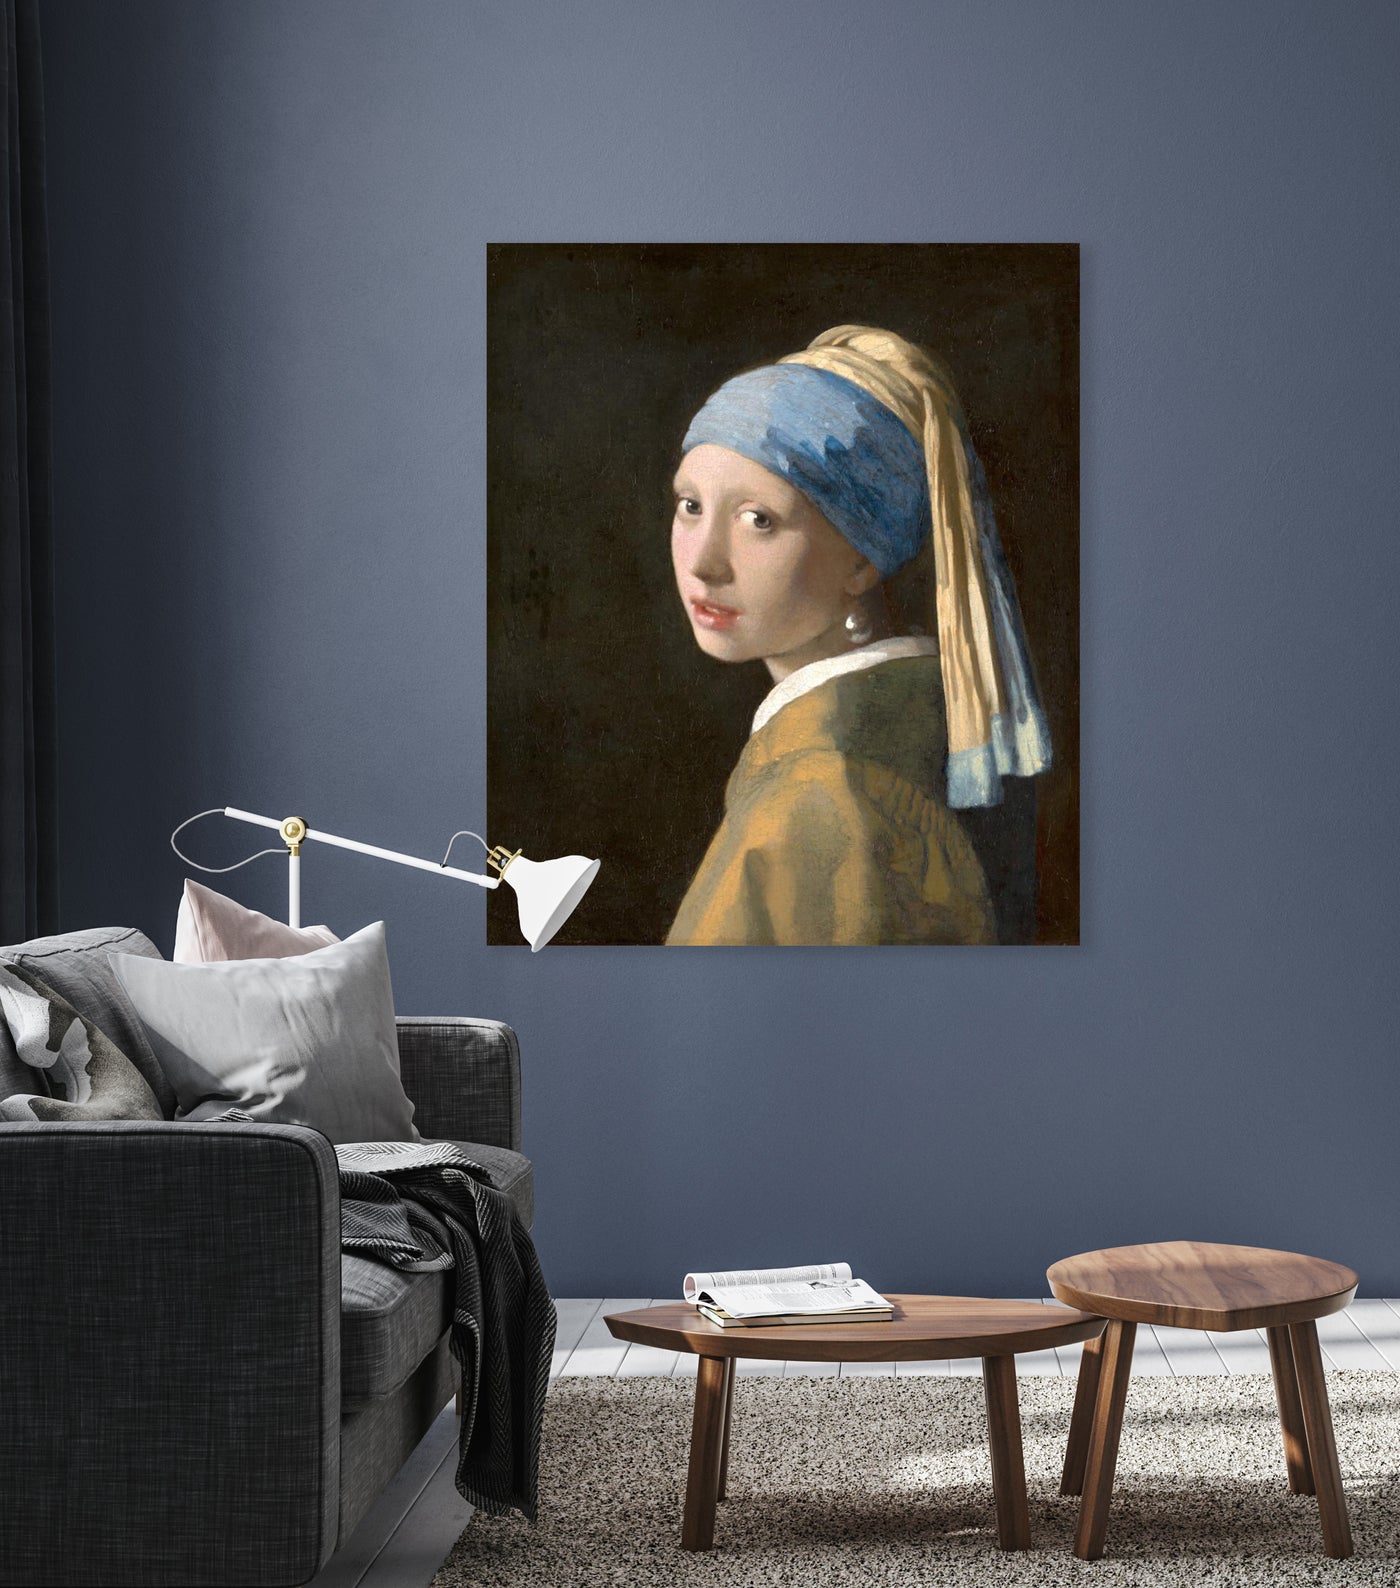 Meisje met de parel - Johannes Vermeer